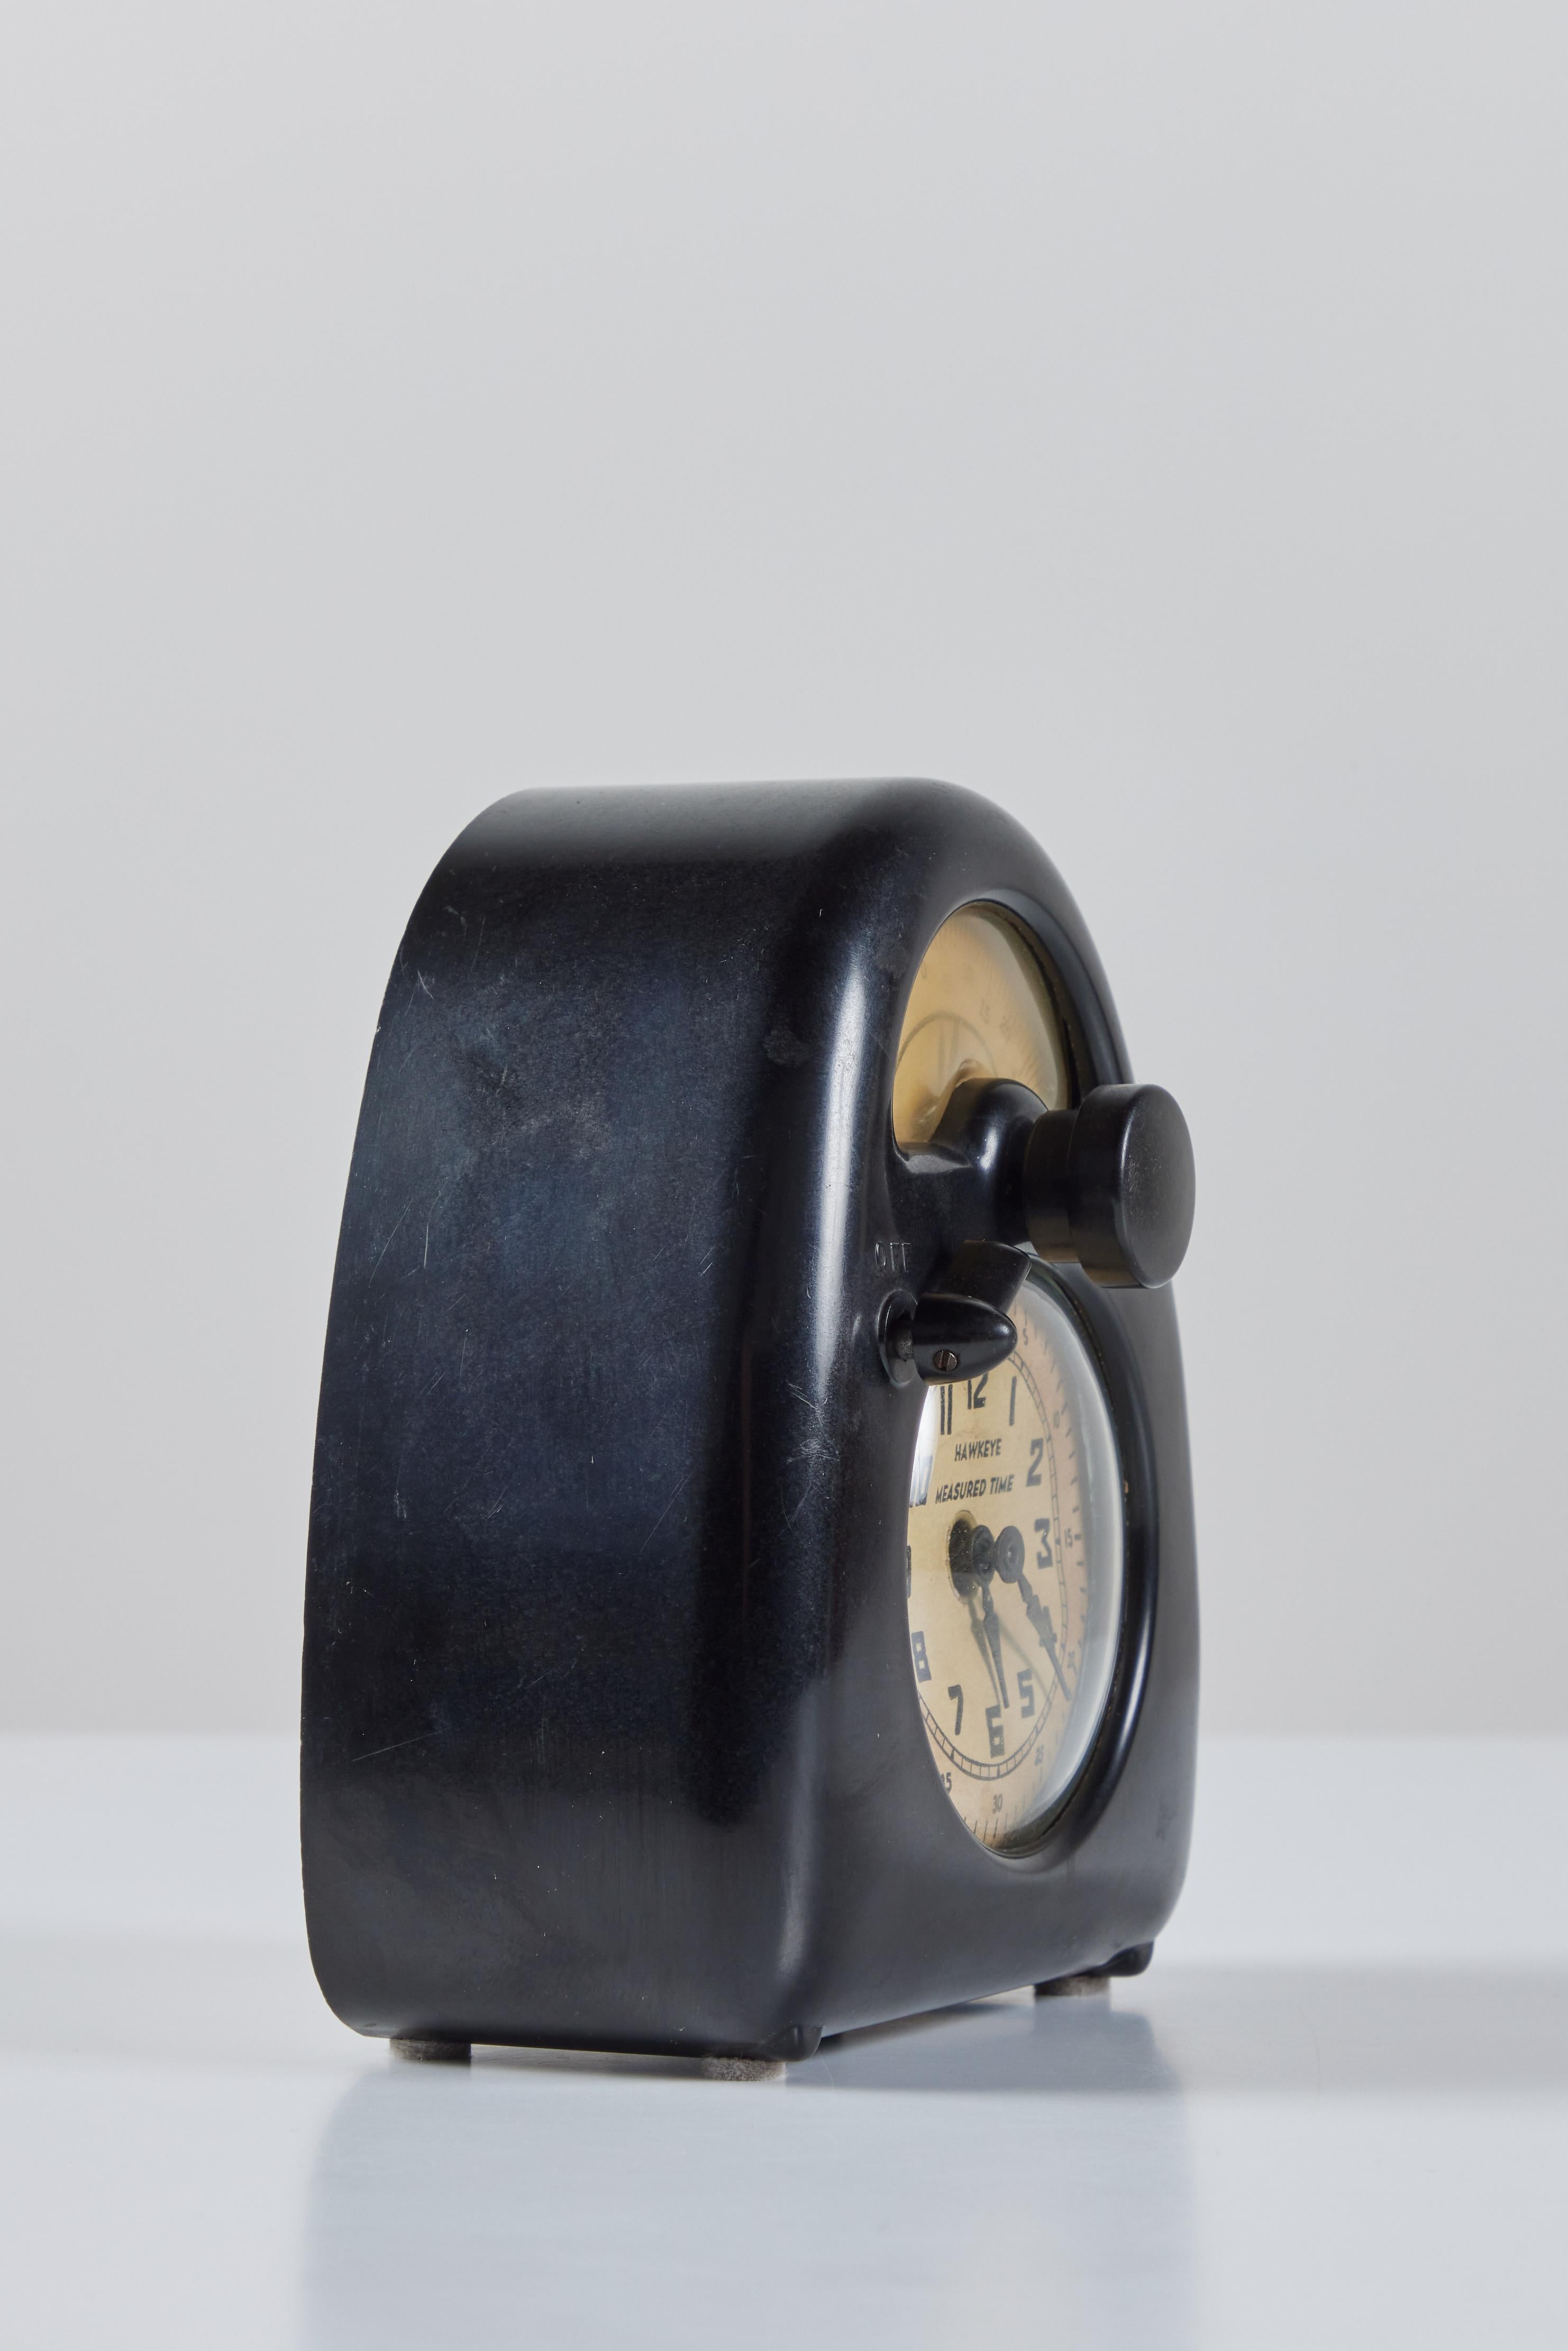 Mid-20th Century Isamu Noguchi Hawkeye Clock & Kitchen Timer